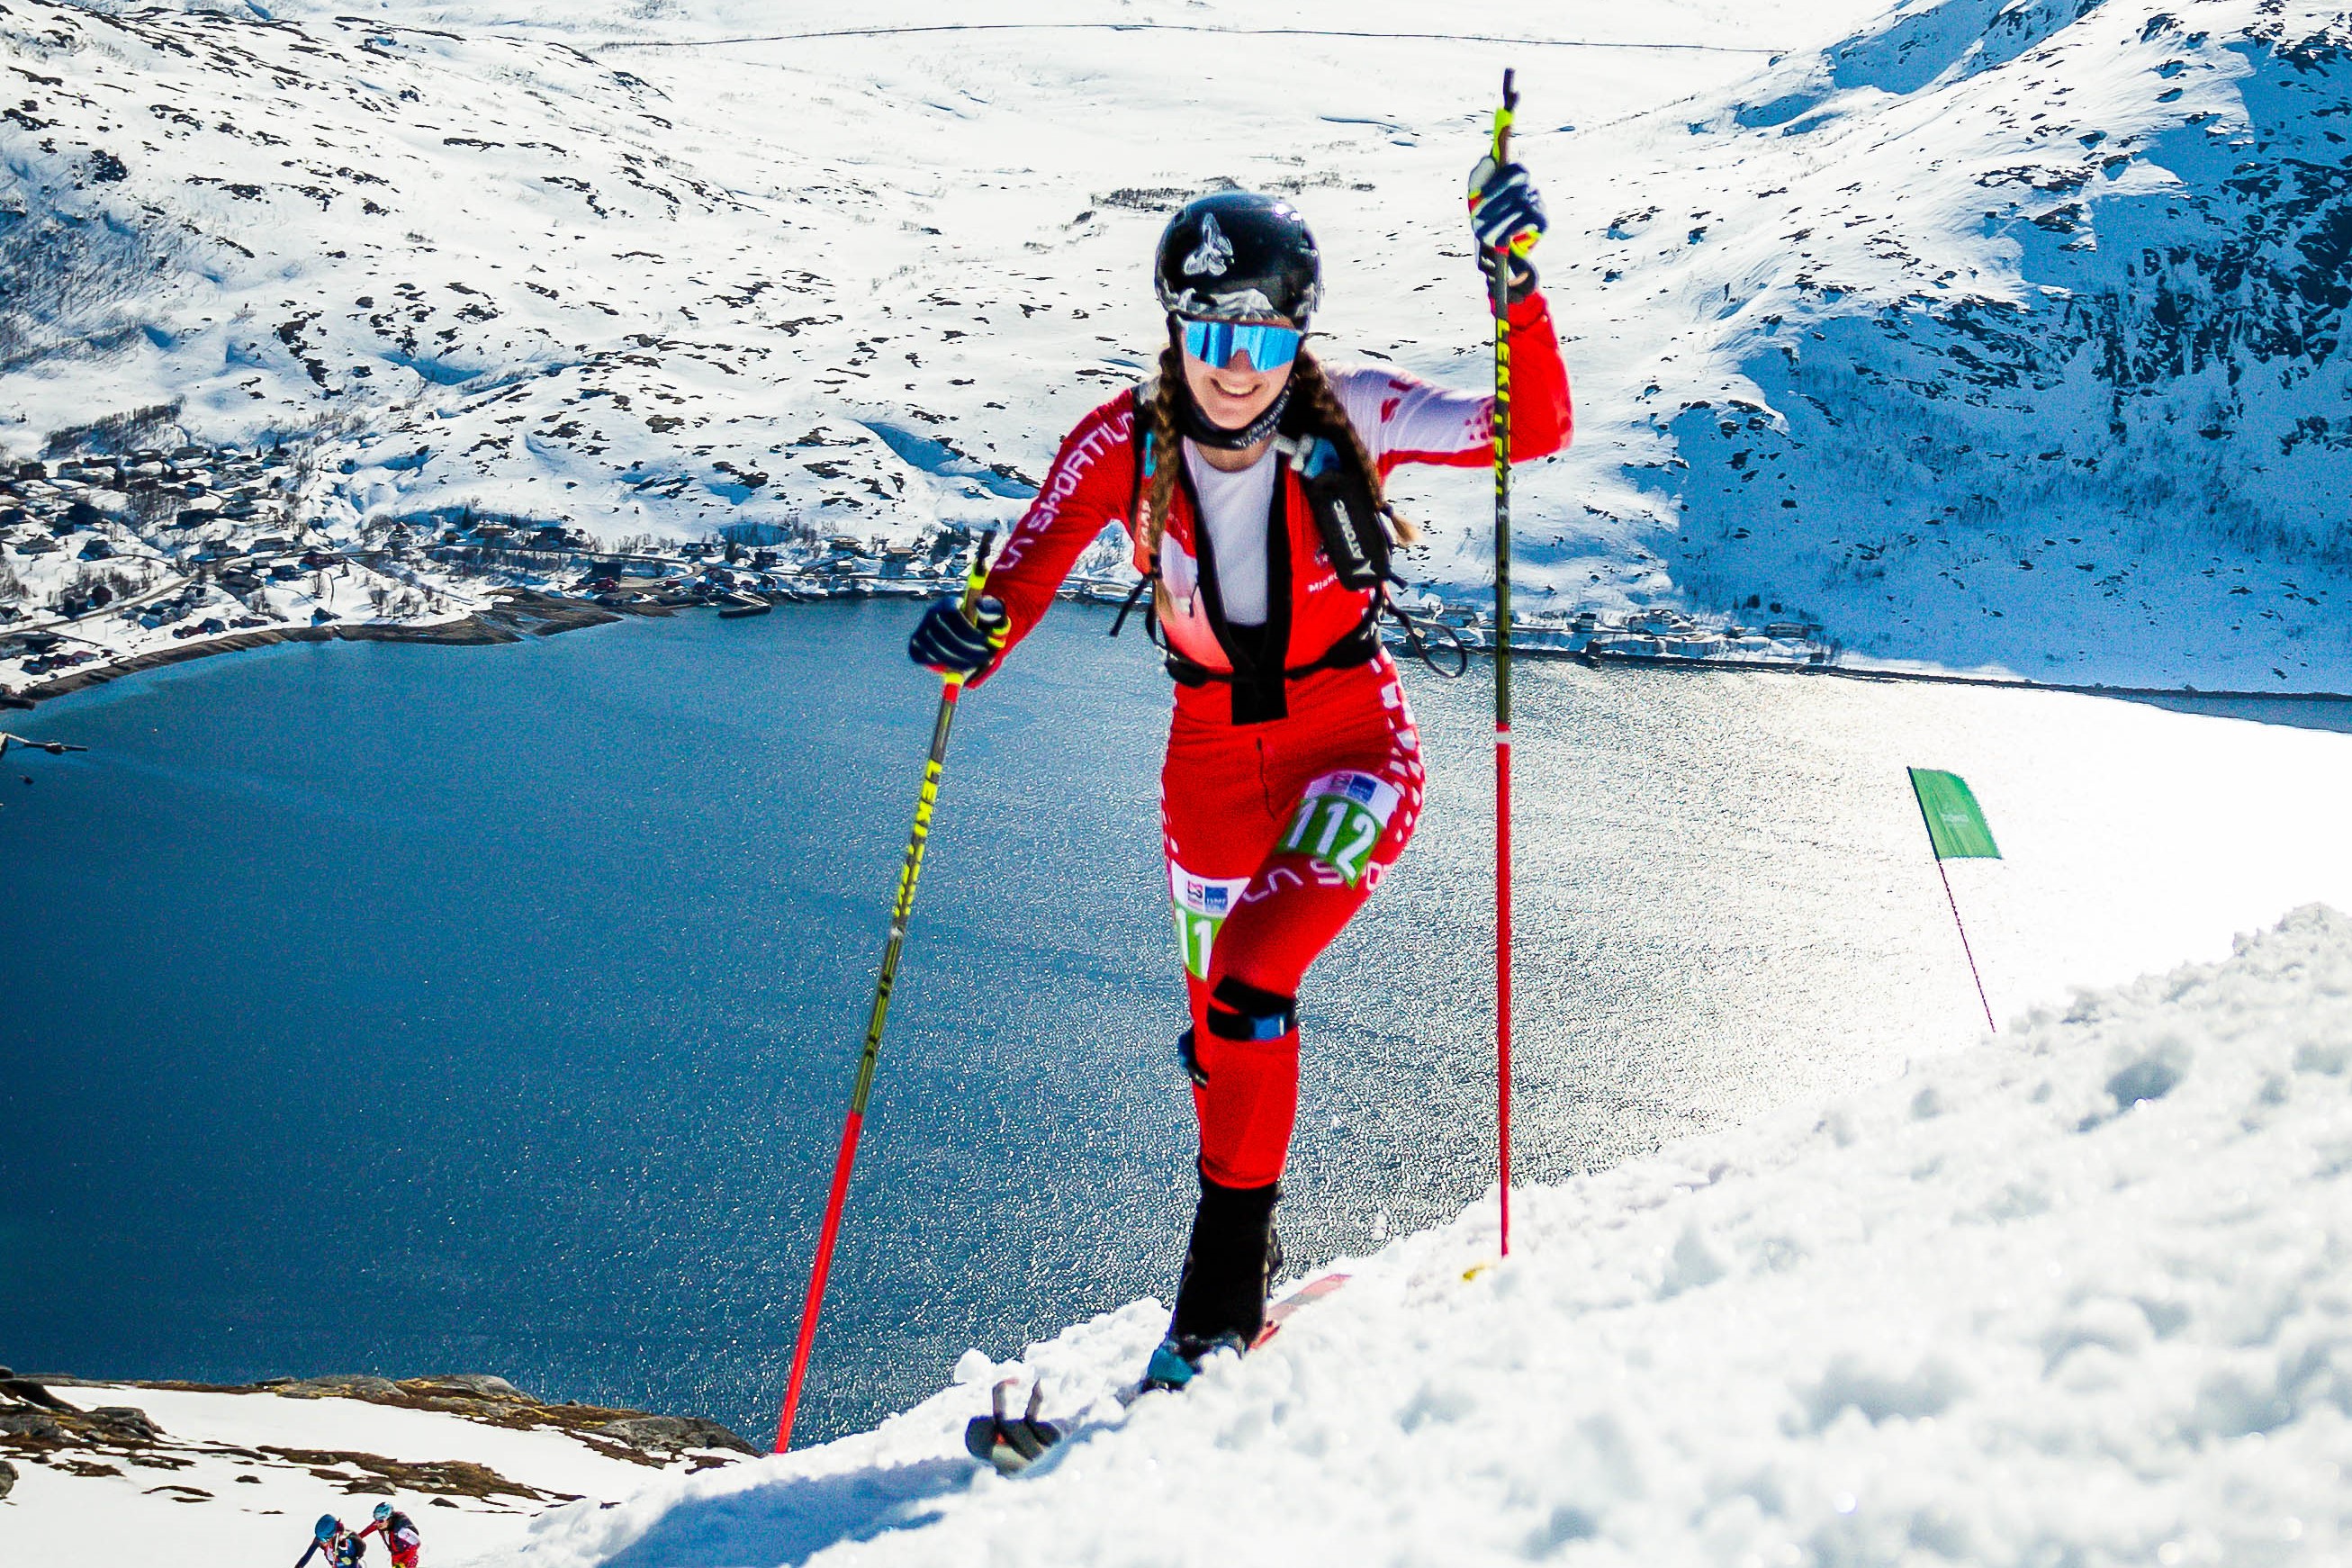 Ski alpinisme: Caroline Ulrich boucle sa première saison chez les moins de 23 ans avec le sourire